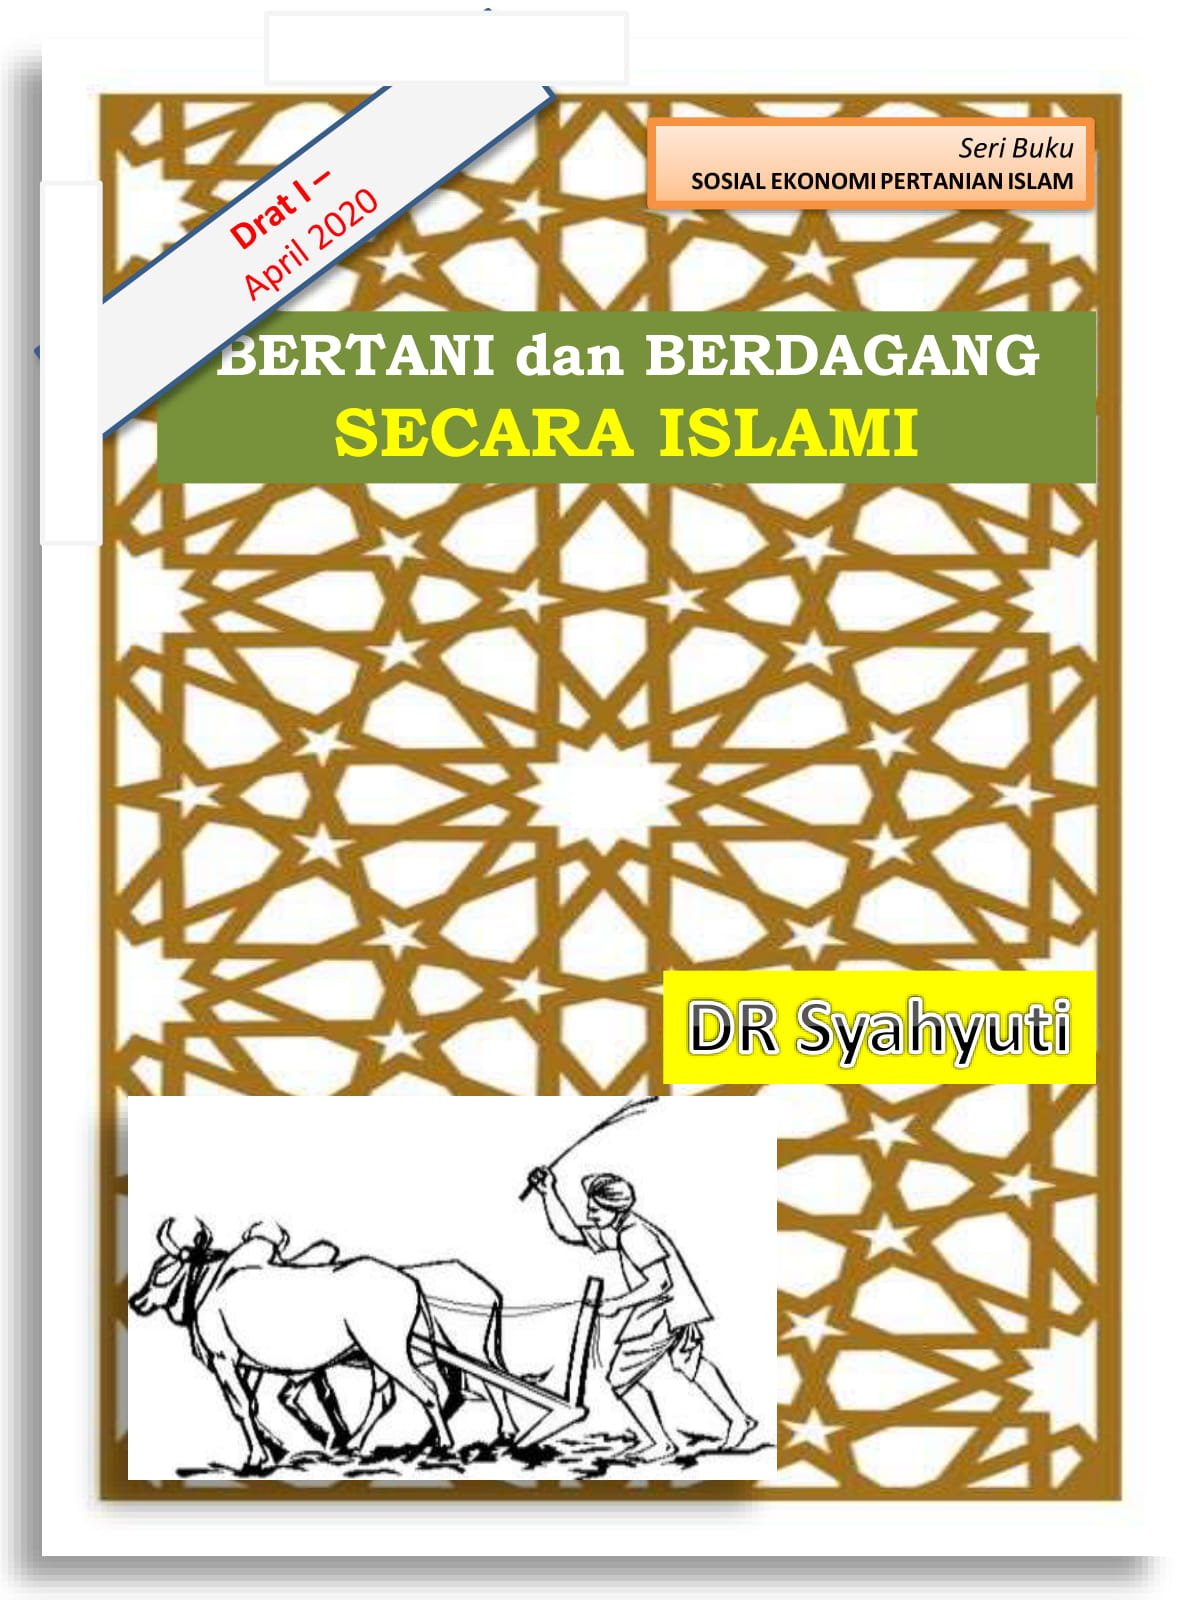 Draft I - buku baru "Bertani dan Berdagang Secara Islami"